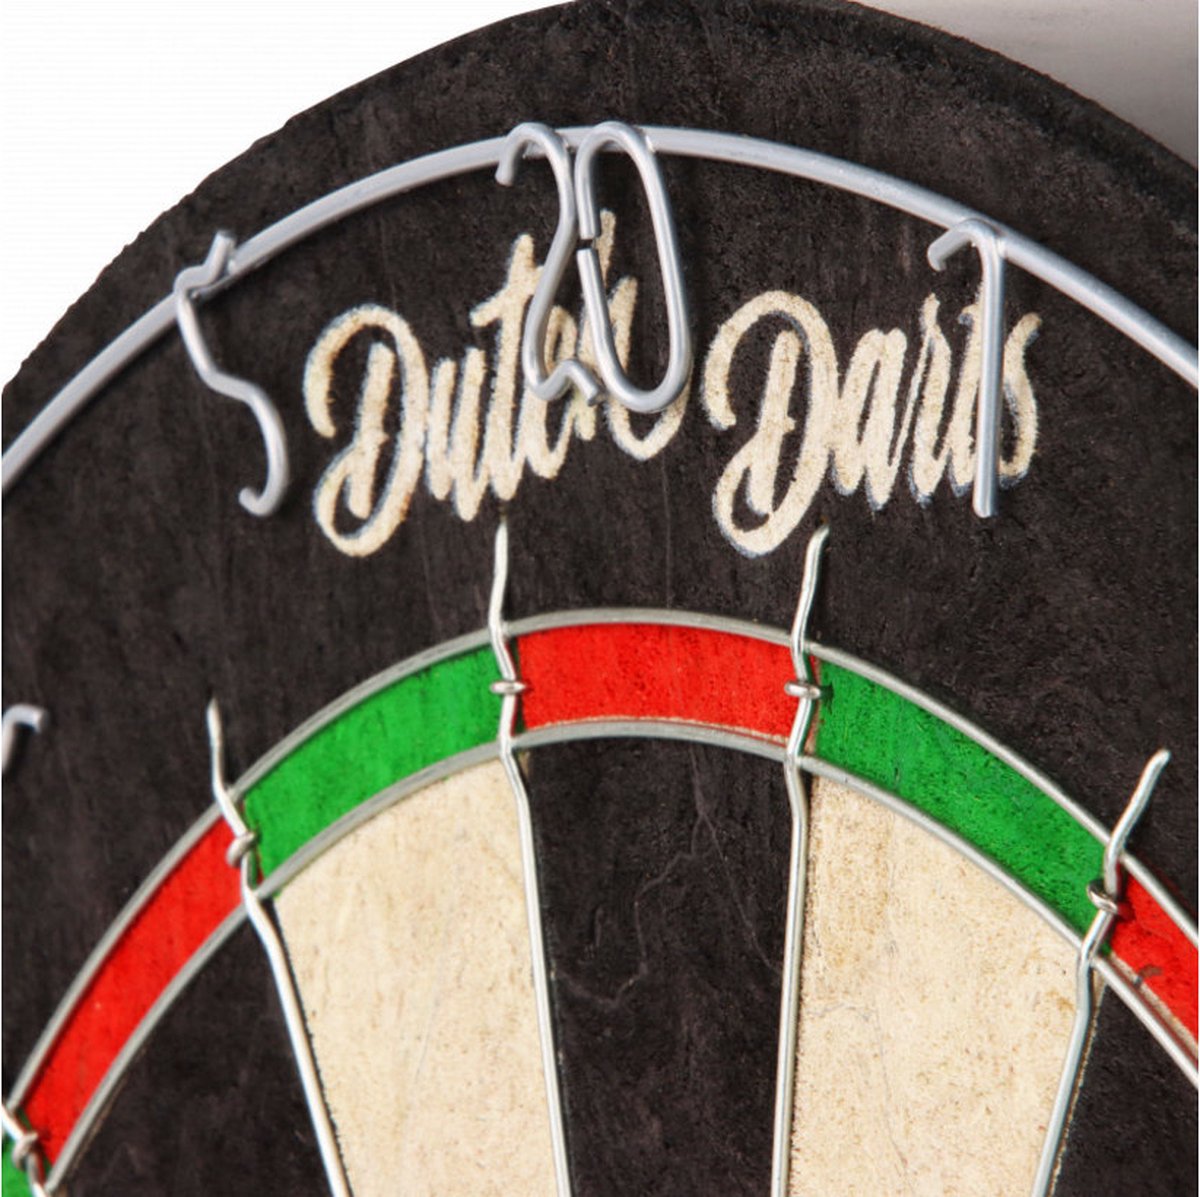 Dartset met roundwire dartbord, zwarte surround en een setje dartpijlen